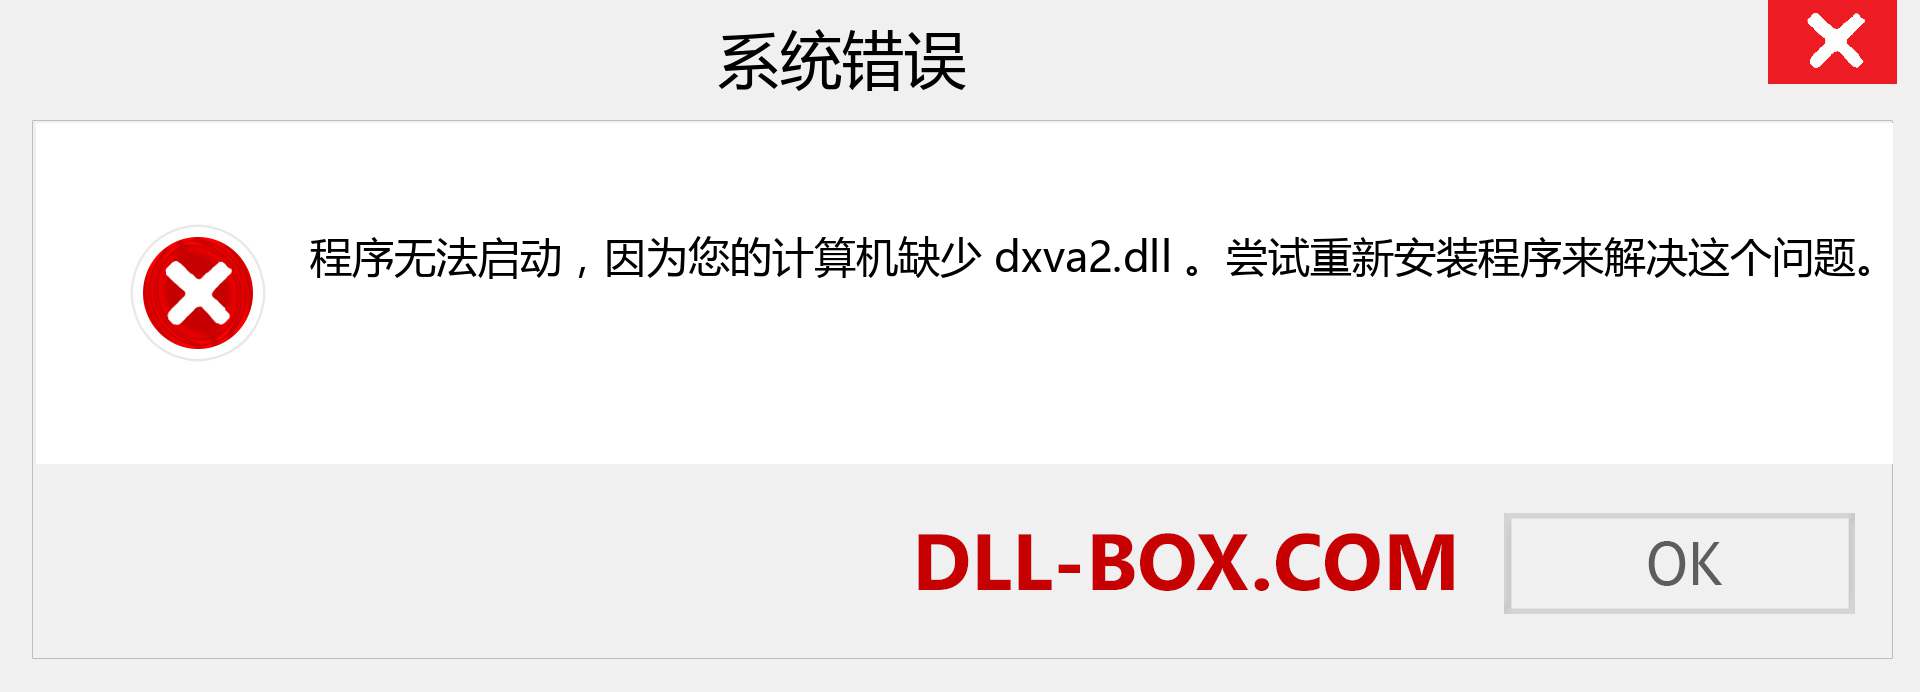 dxva2.dll 文件丢失？。 适用于 Windows 7、8、10 的下载 - 修复 Windows、照片、图像上的 dxva2 dll 丢失错误